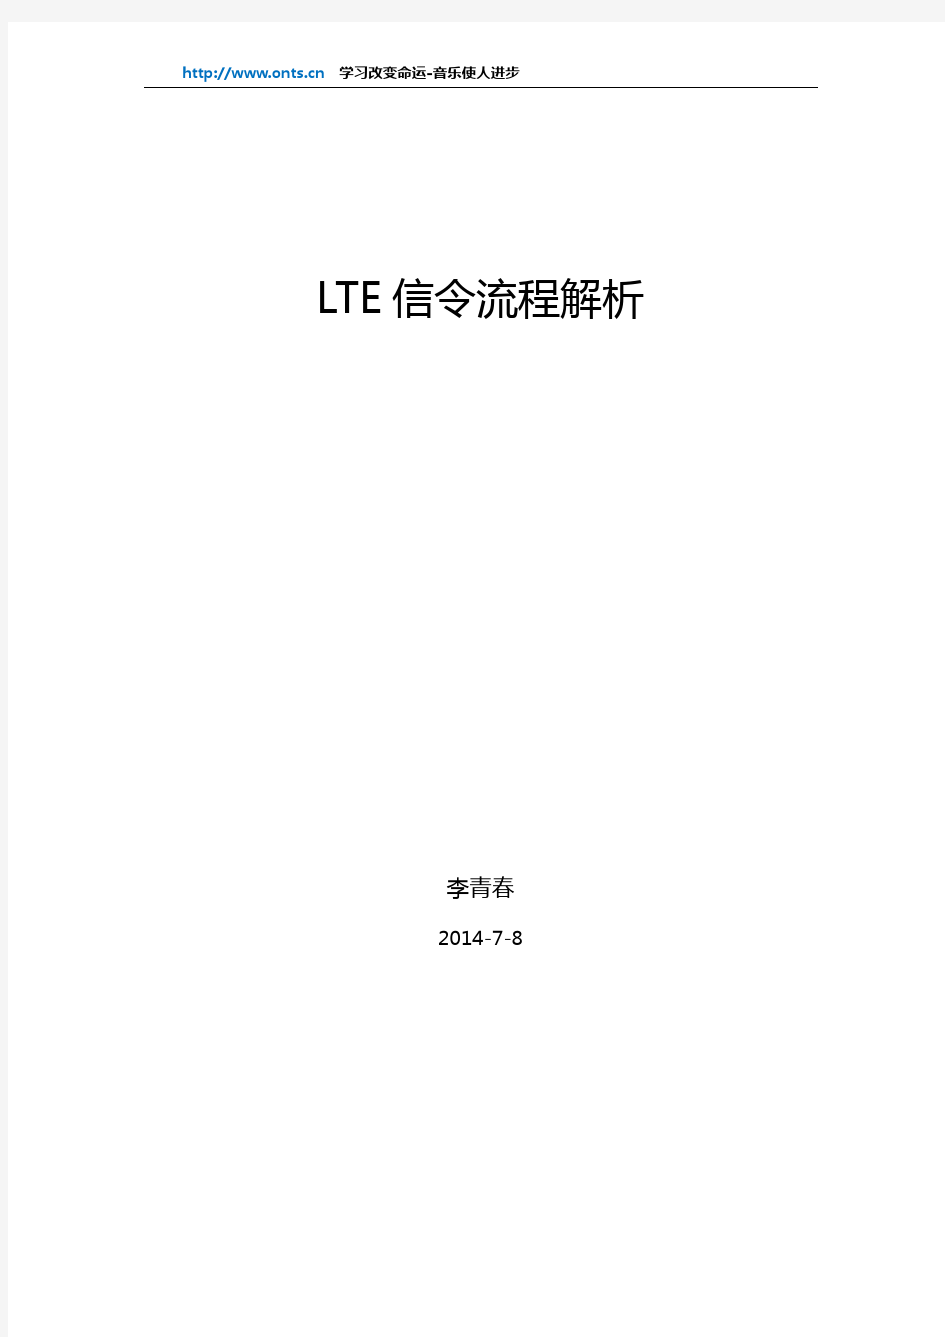 【LTE基础】LTE信令流程解析